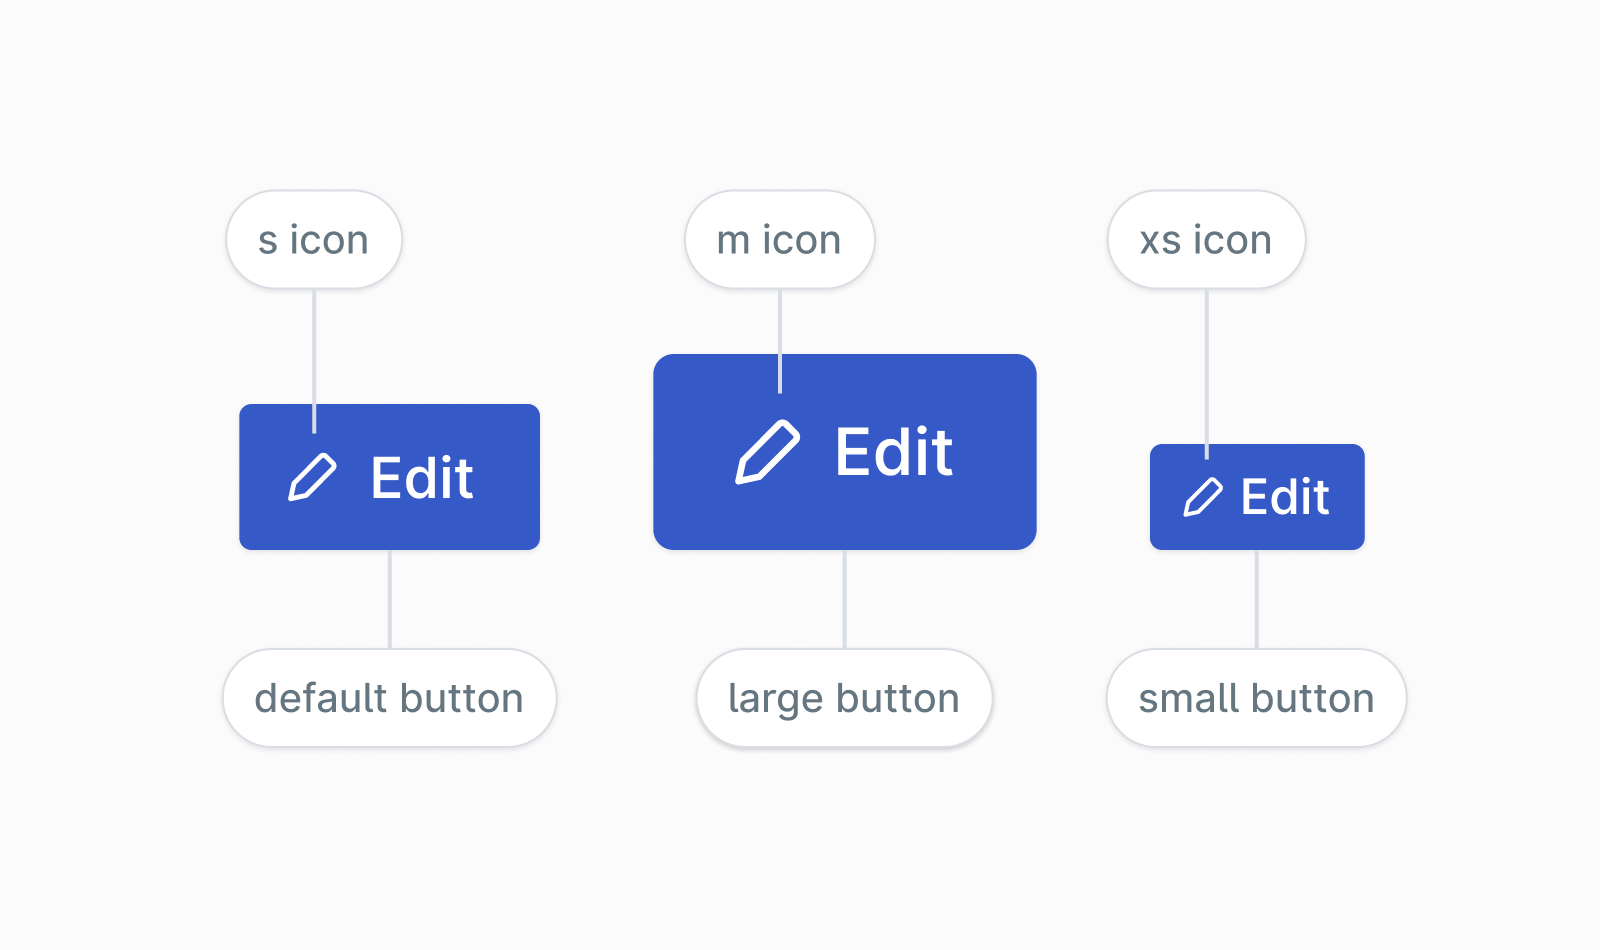 Button icon sizes